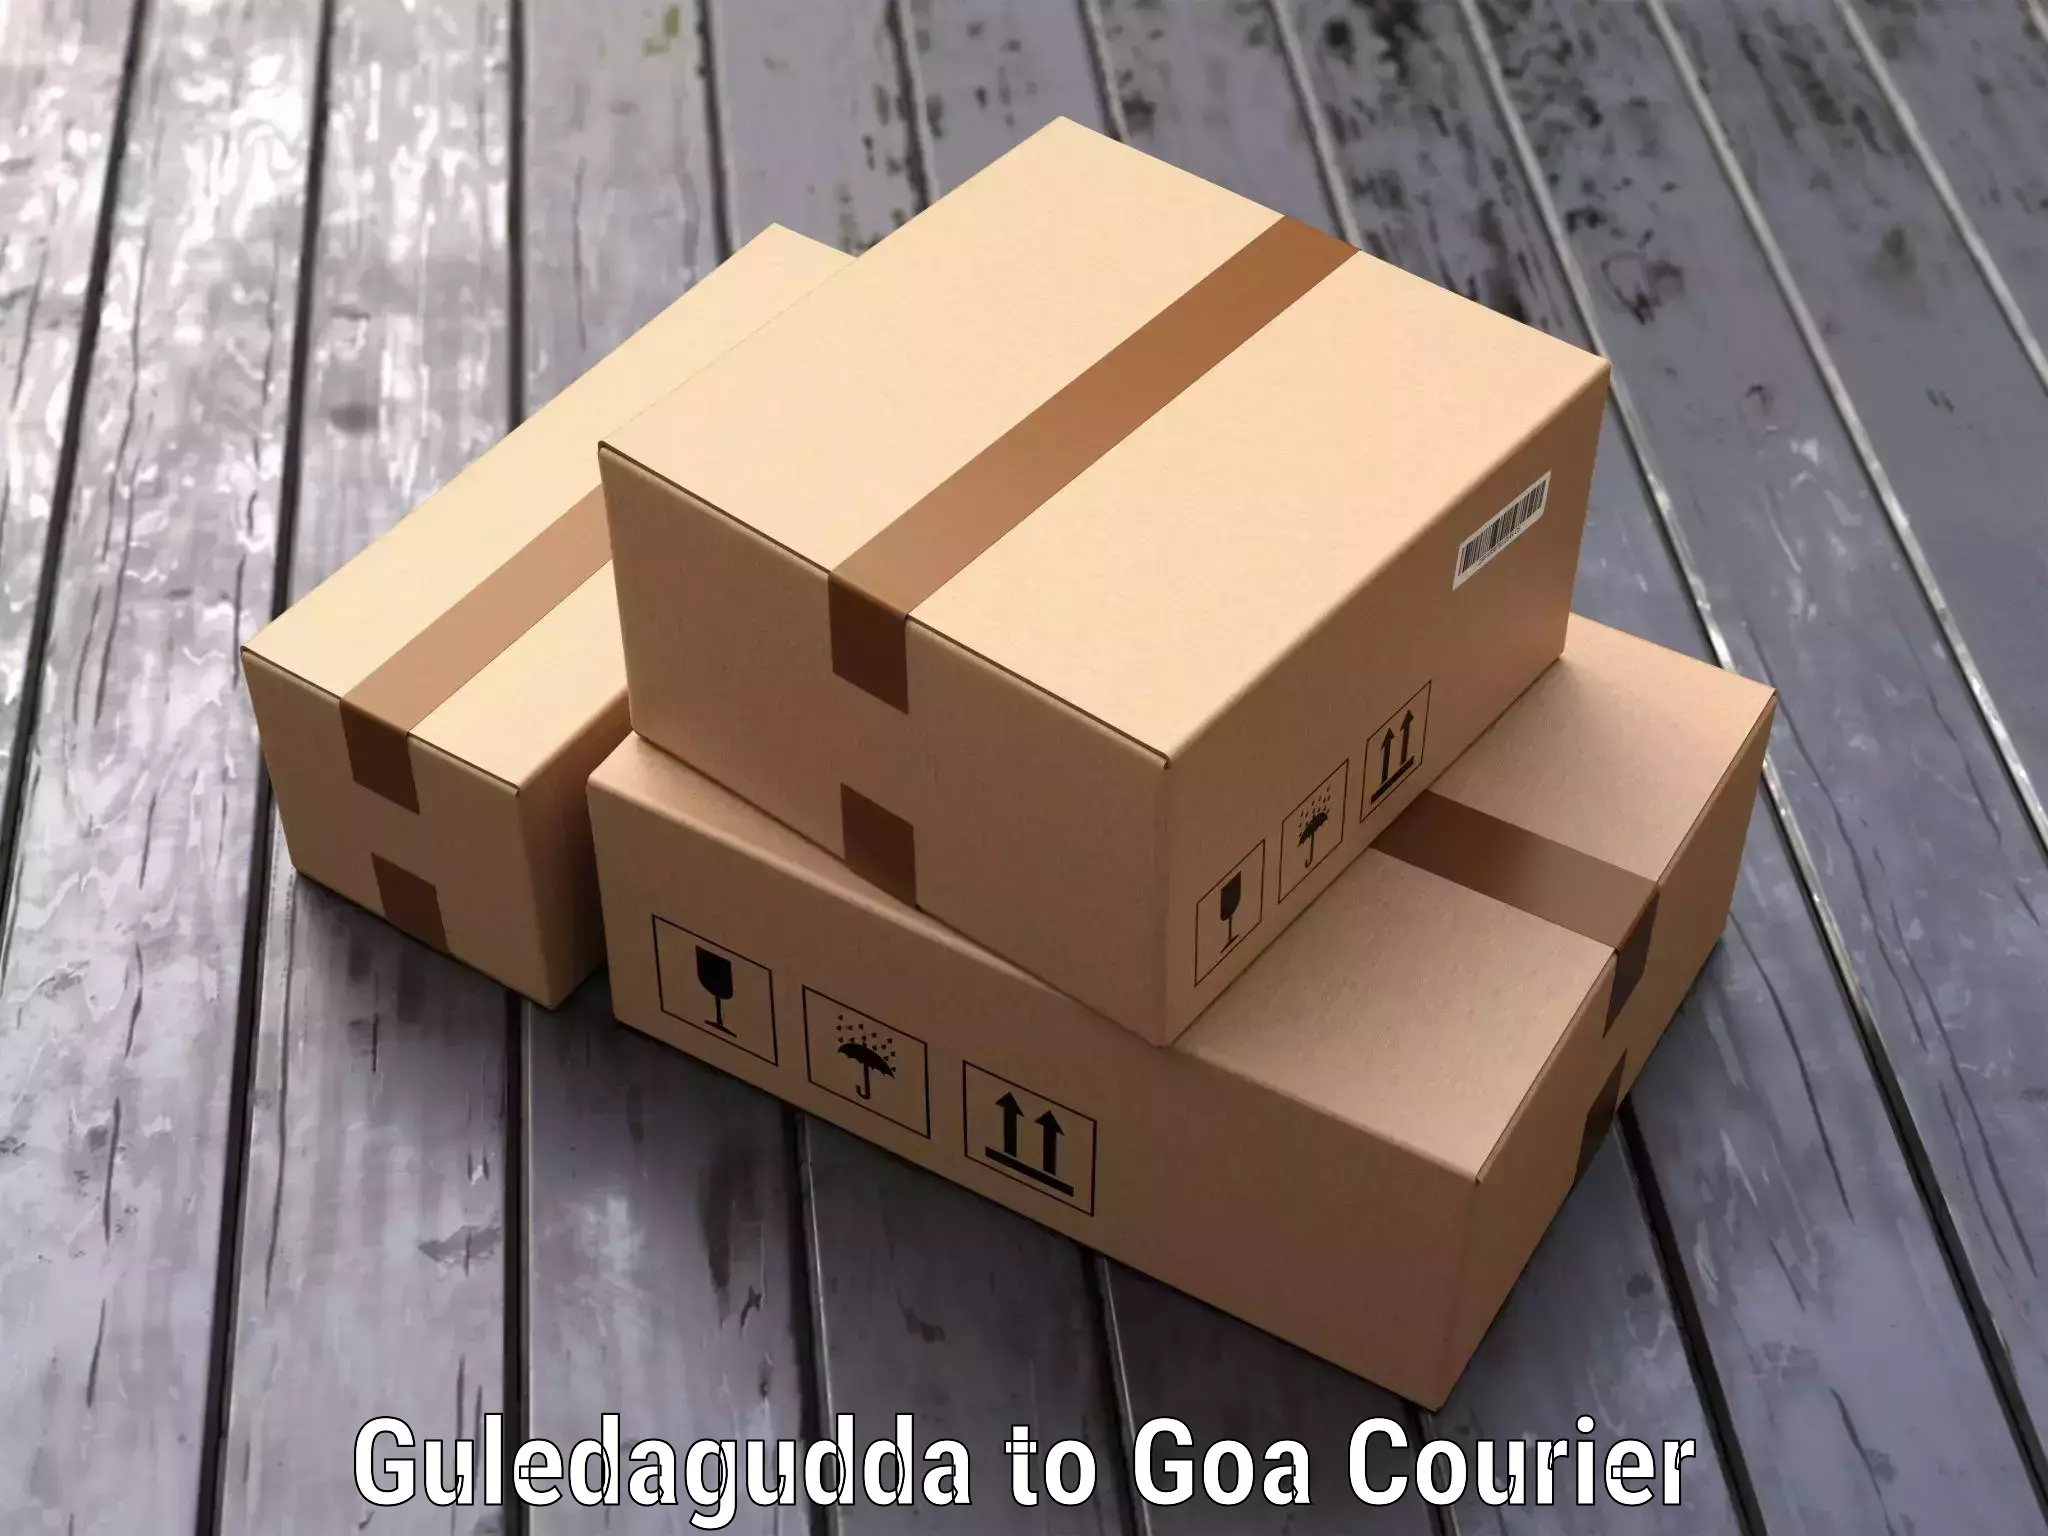 Luggage delivery estimate Guledagudda to Goa